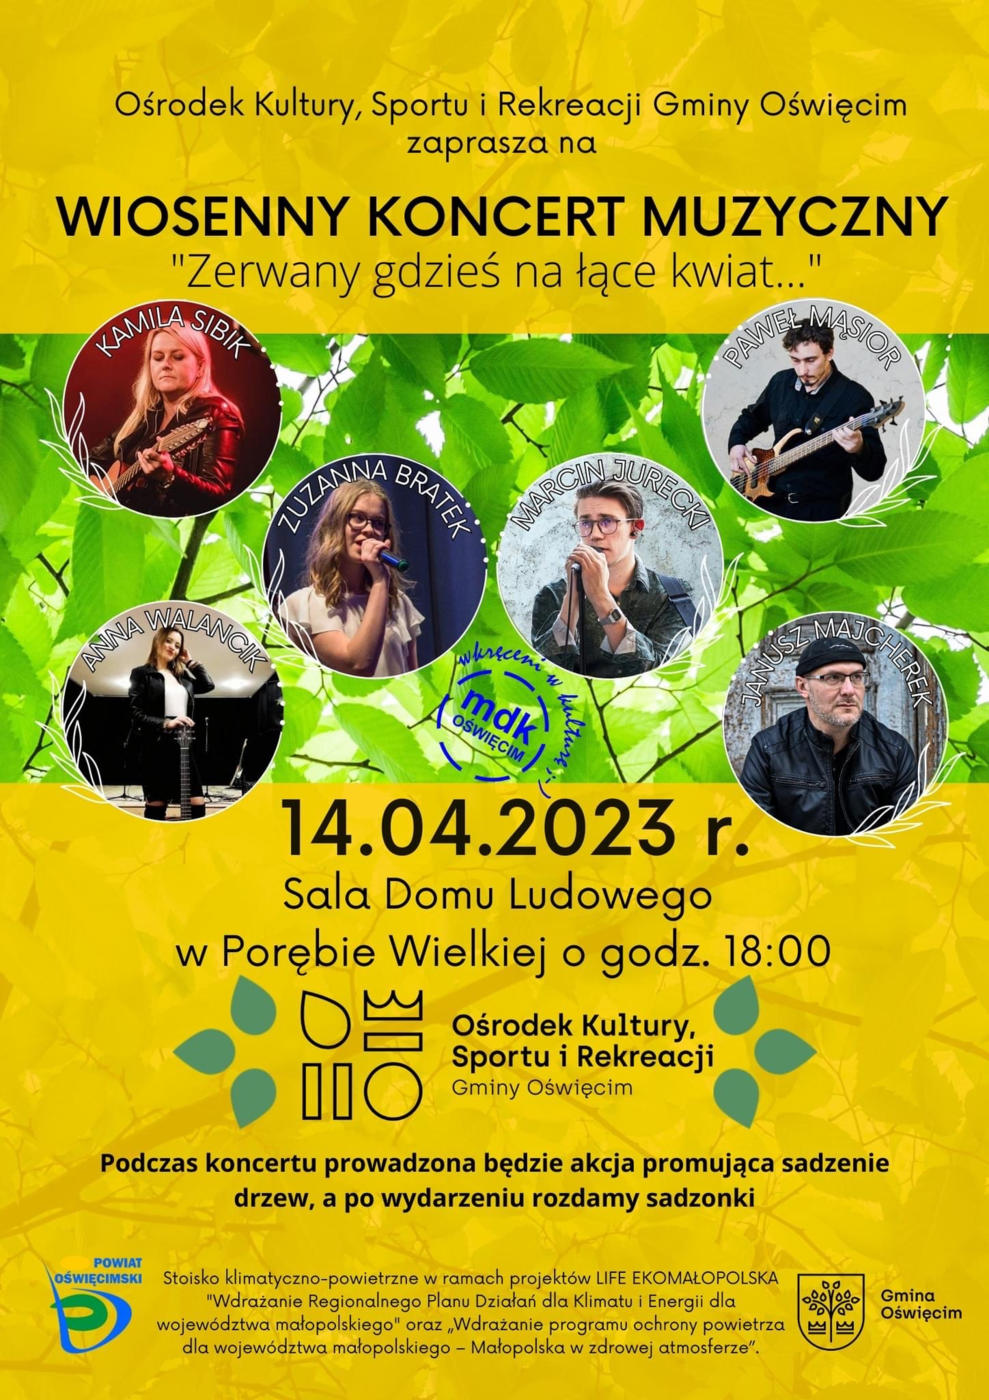 Wiosenny klimat i muzyka zagoszczą na wiosennym koncercie muzycznym, organizowanym przez Ośrodek Kultury, Sportu i Rekreacji Gminy Oświęcim. 